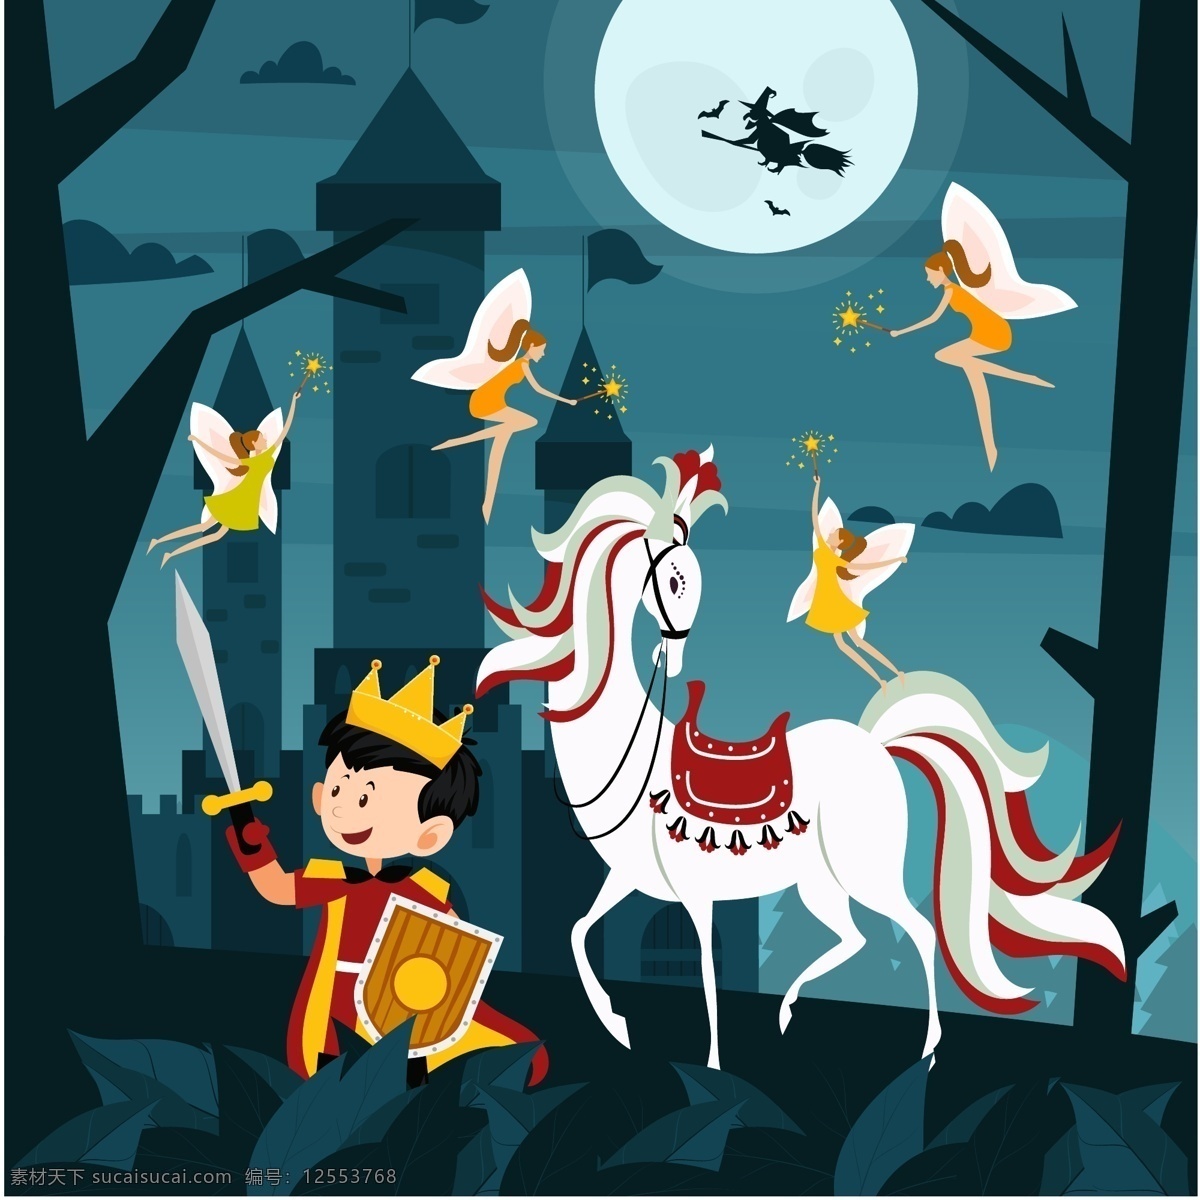 创意 童话 王子 白马 夜晚 树林 树木 精灵 宝剑 盾牌 人物 动漫动画 动漫人物